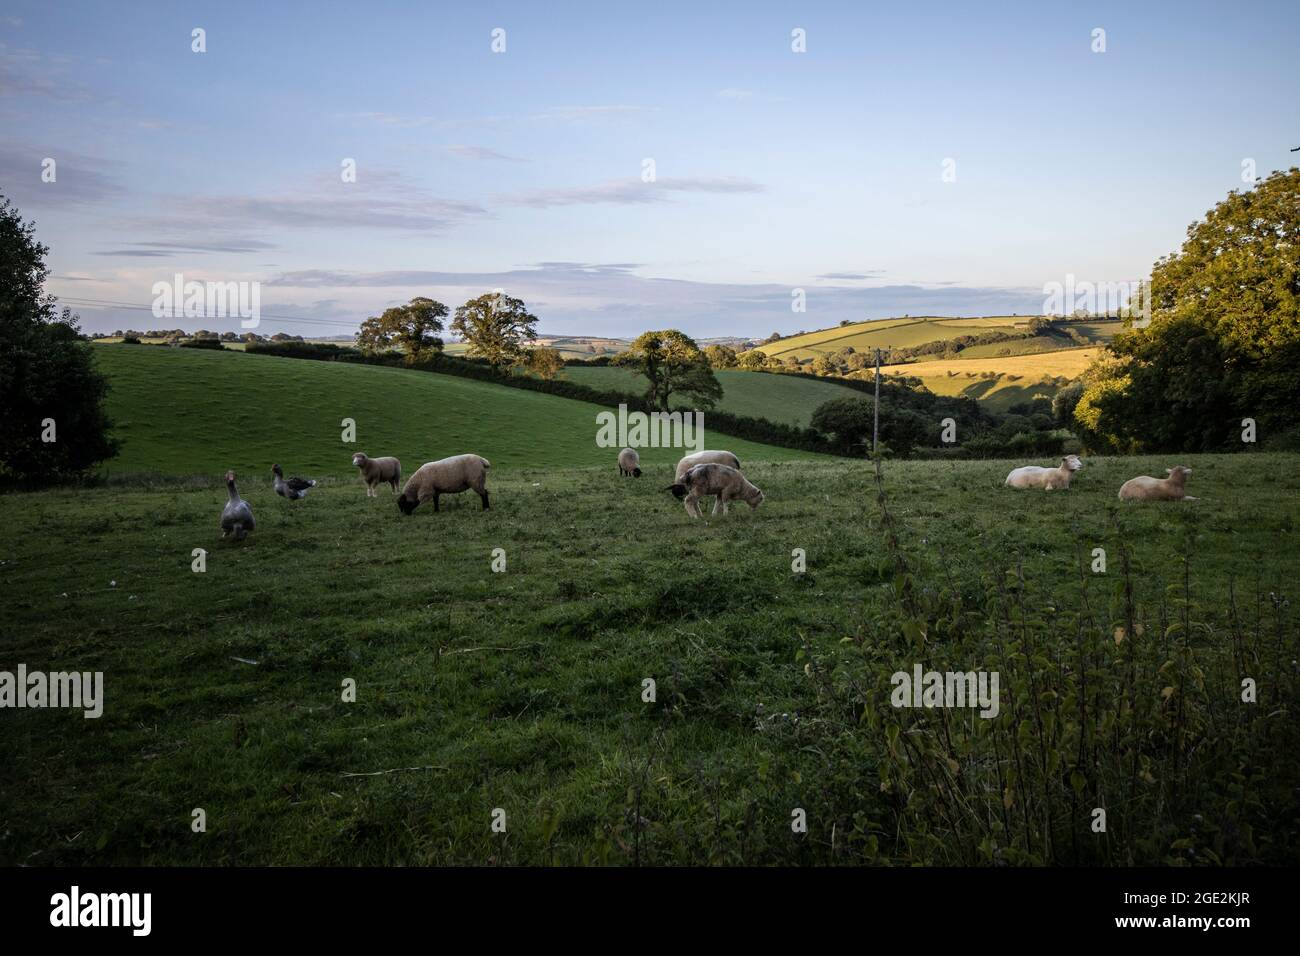 La lumière du matin s'élève au-dessus de l'horizon tandis que les moutons se broutent dans un champ dans la campagne du Devon, Hallwell, South Hams, Angleterre, Royaume-Uni Banque D'Images